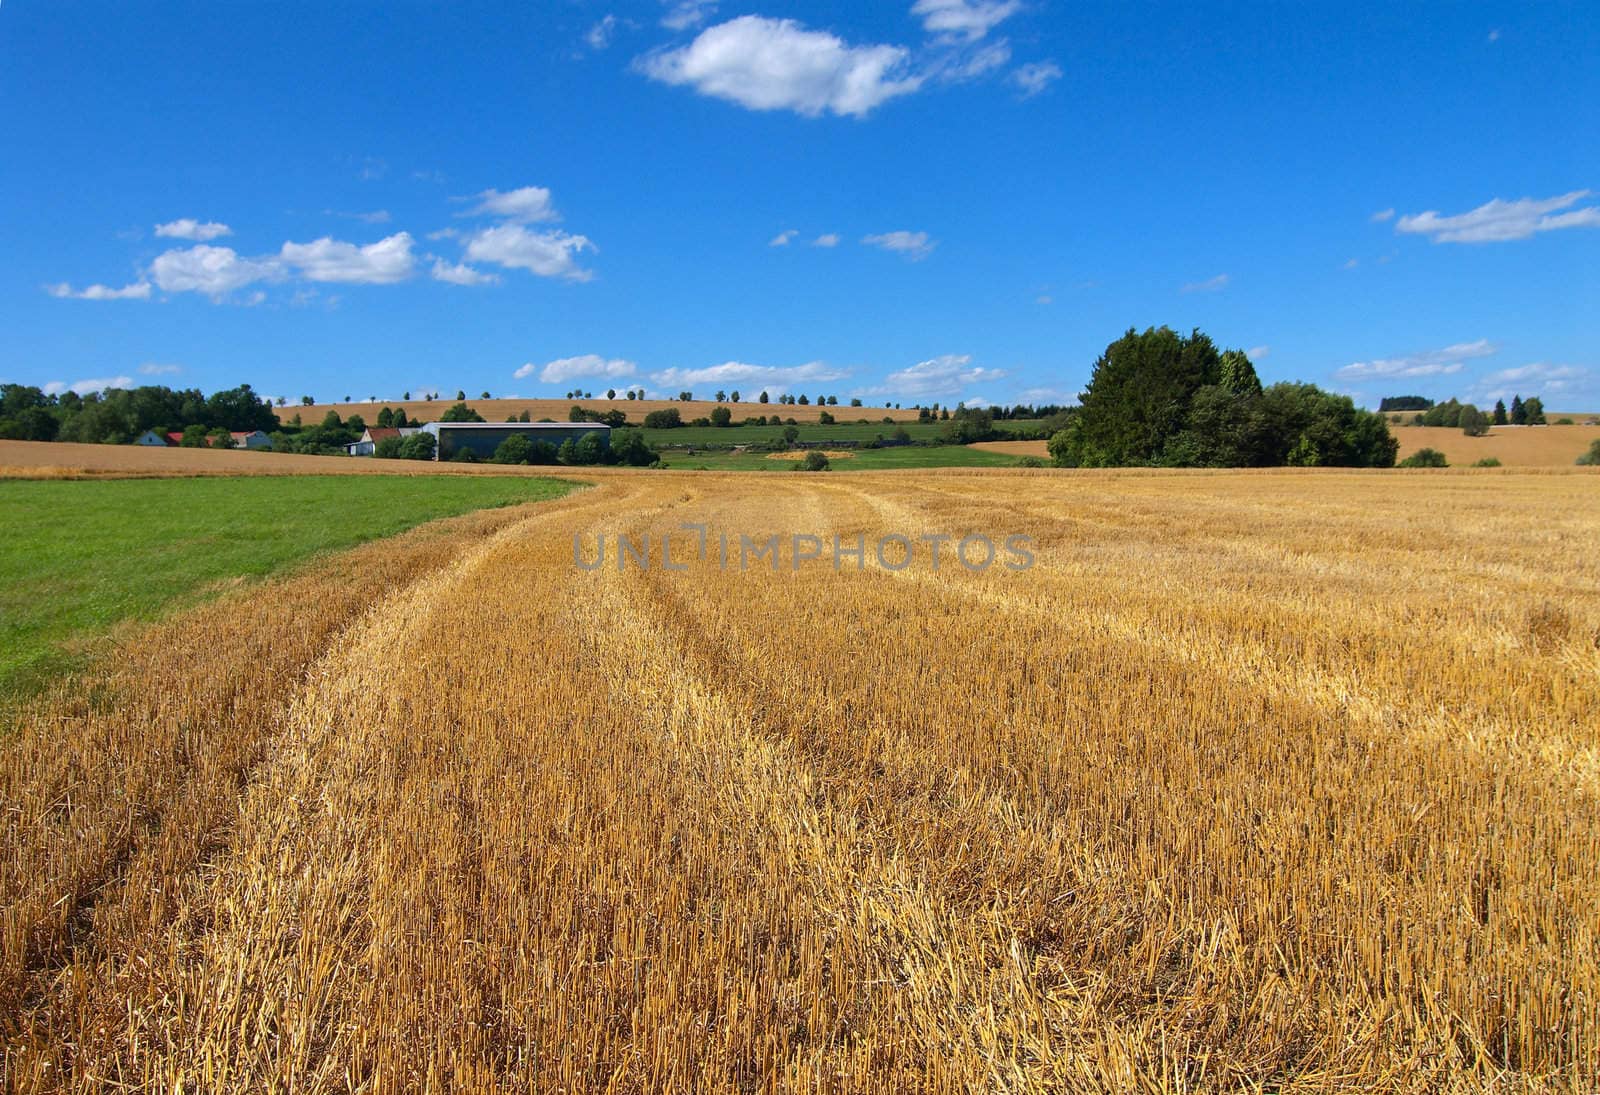 The oblique wheaten field. Harvesting